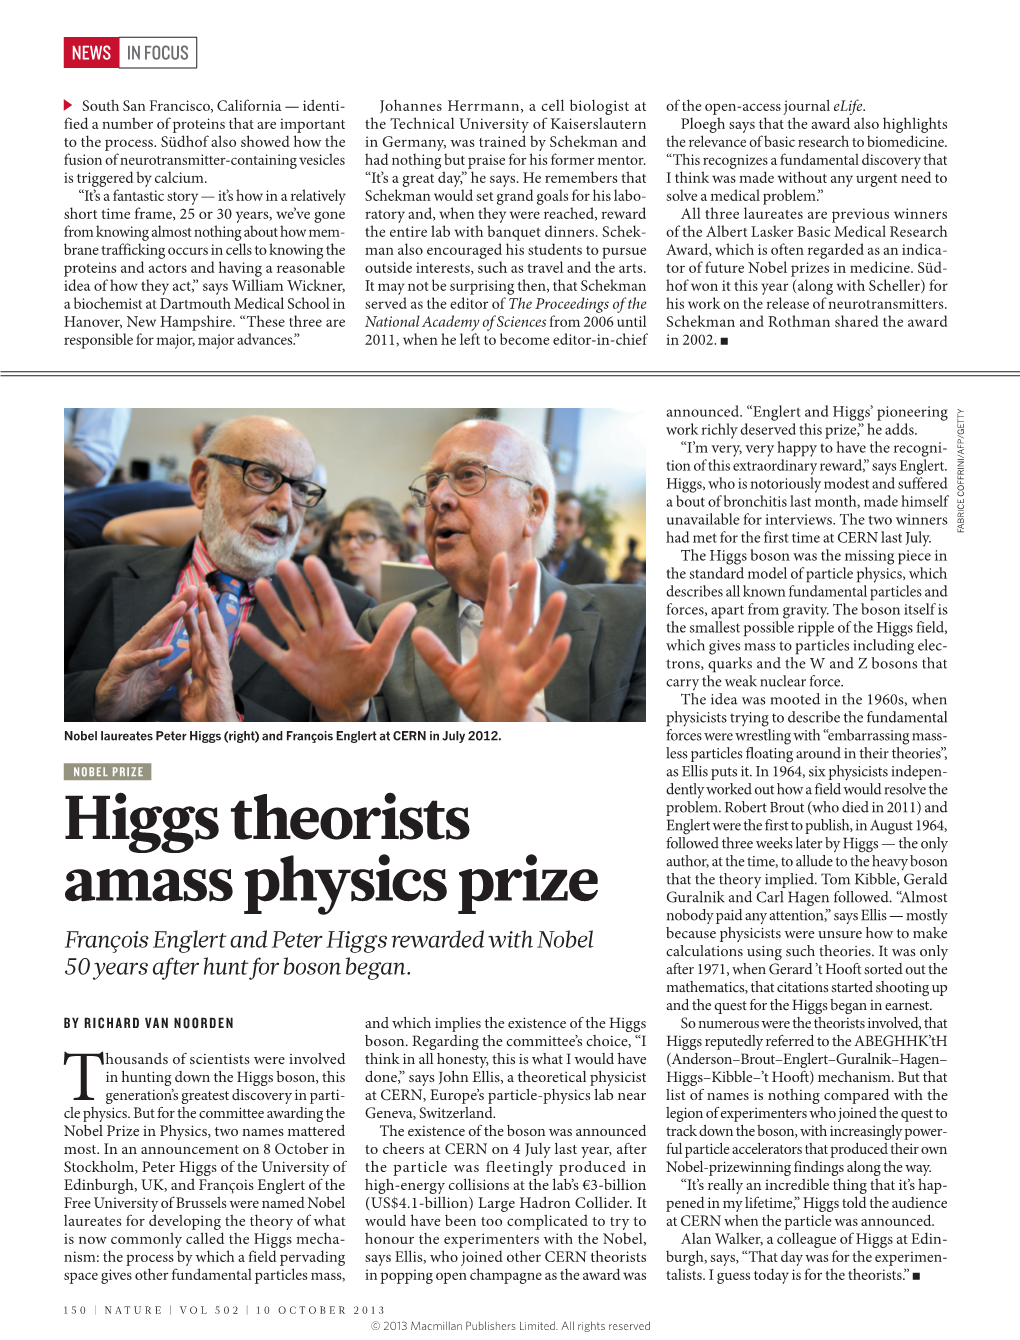 Higgs Theorists Amass Physics Prize